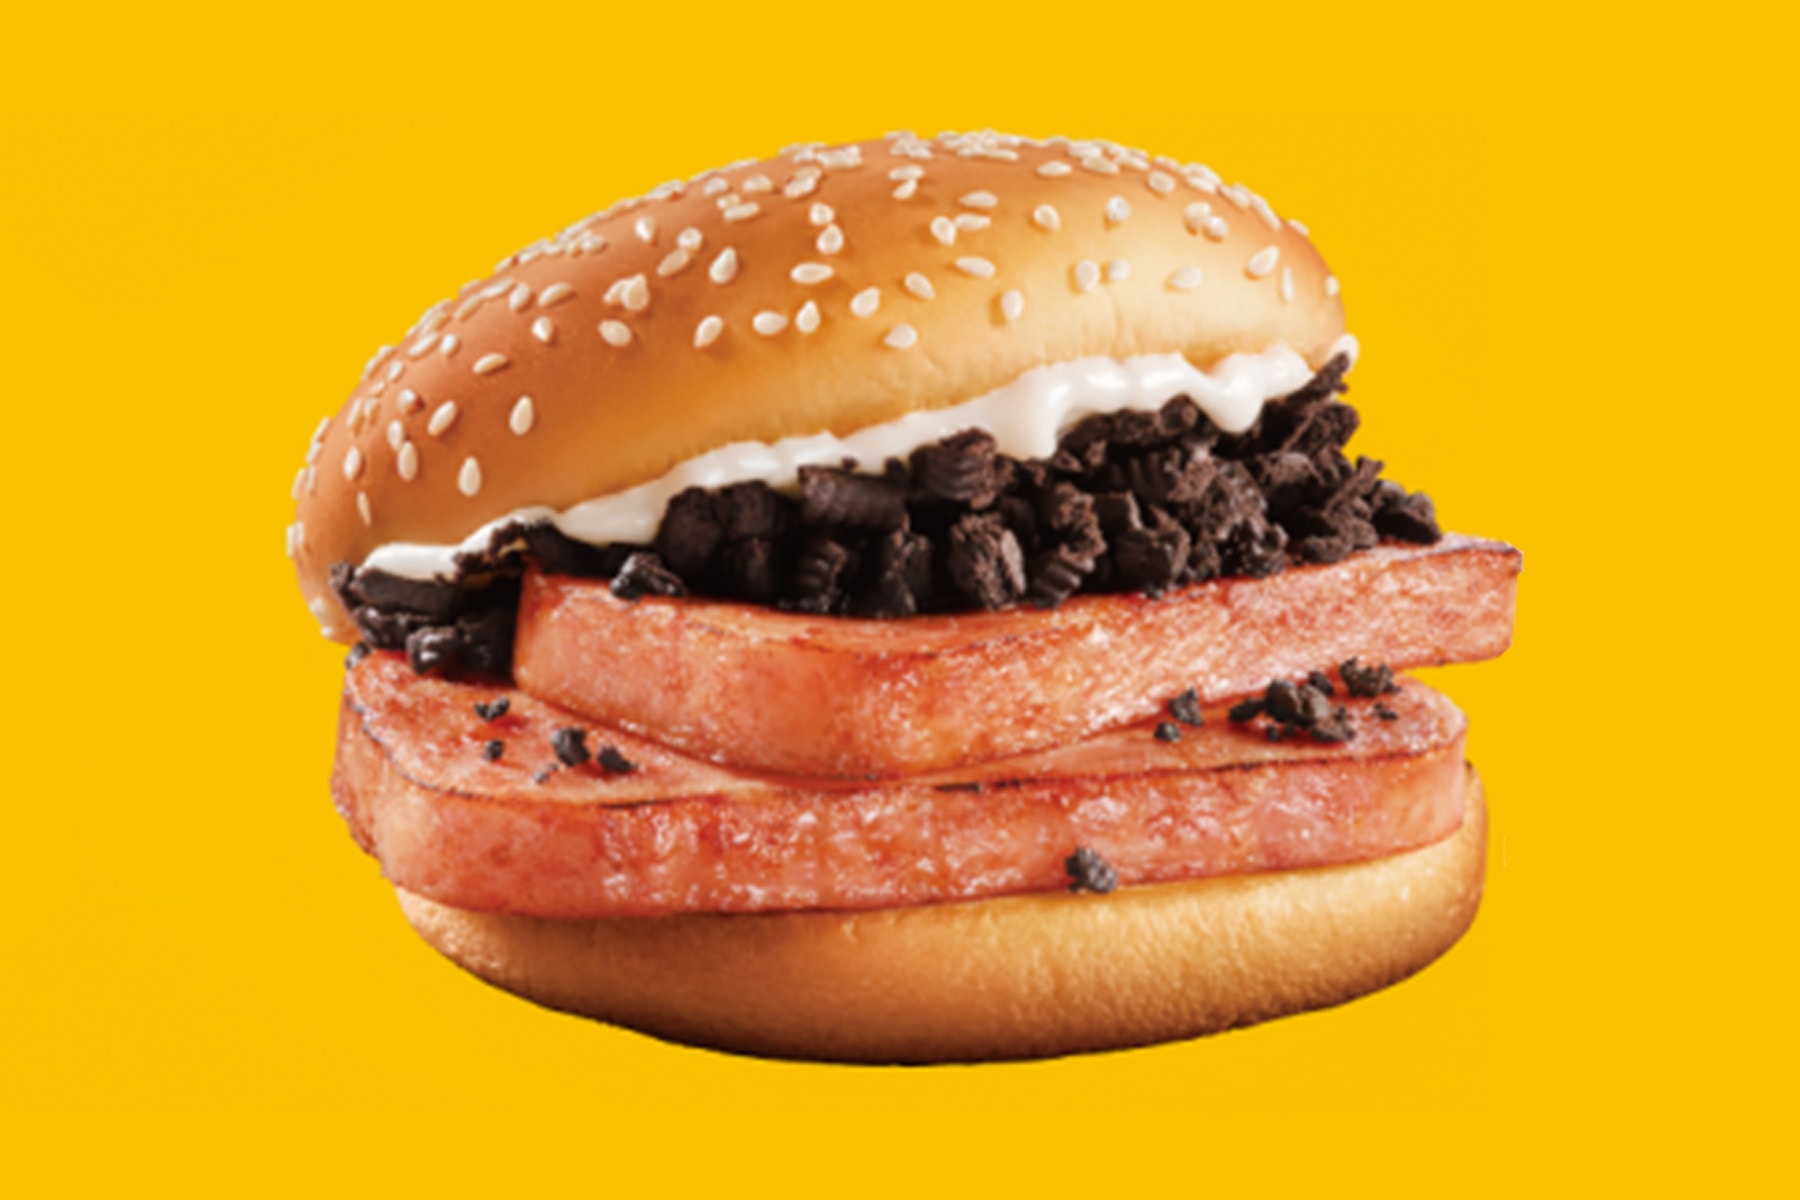 中國 McDonald’s 推出期間限定「OREO x SPAM 午餐肉」漢堡